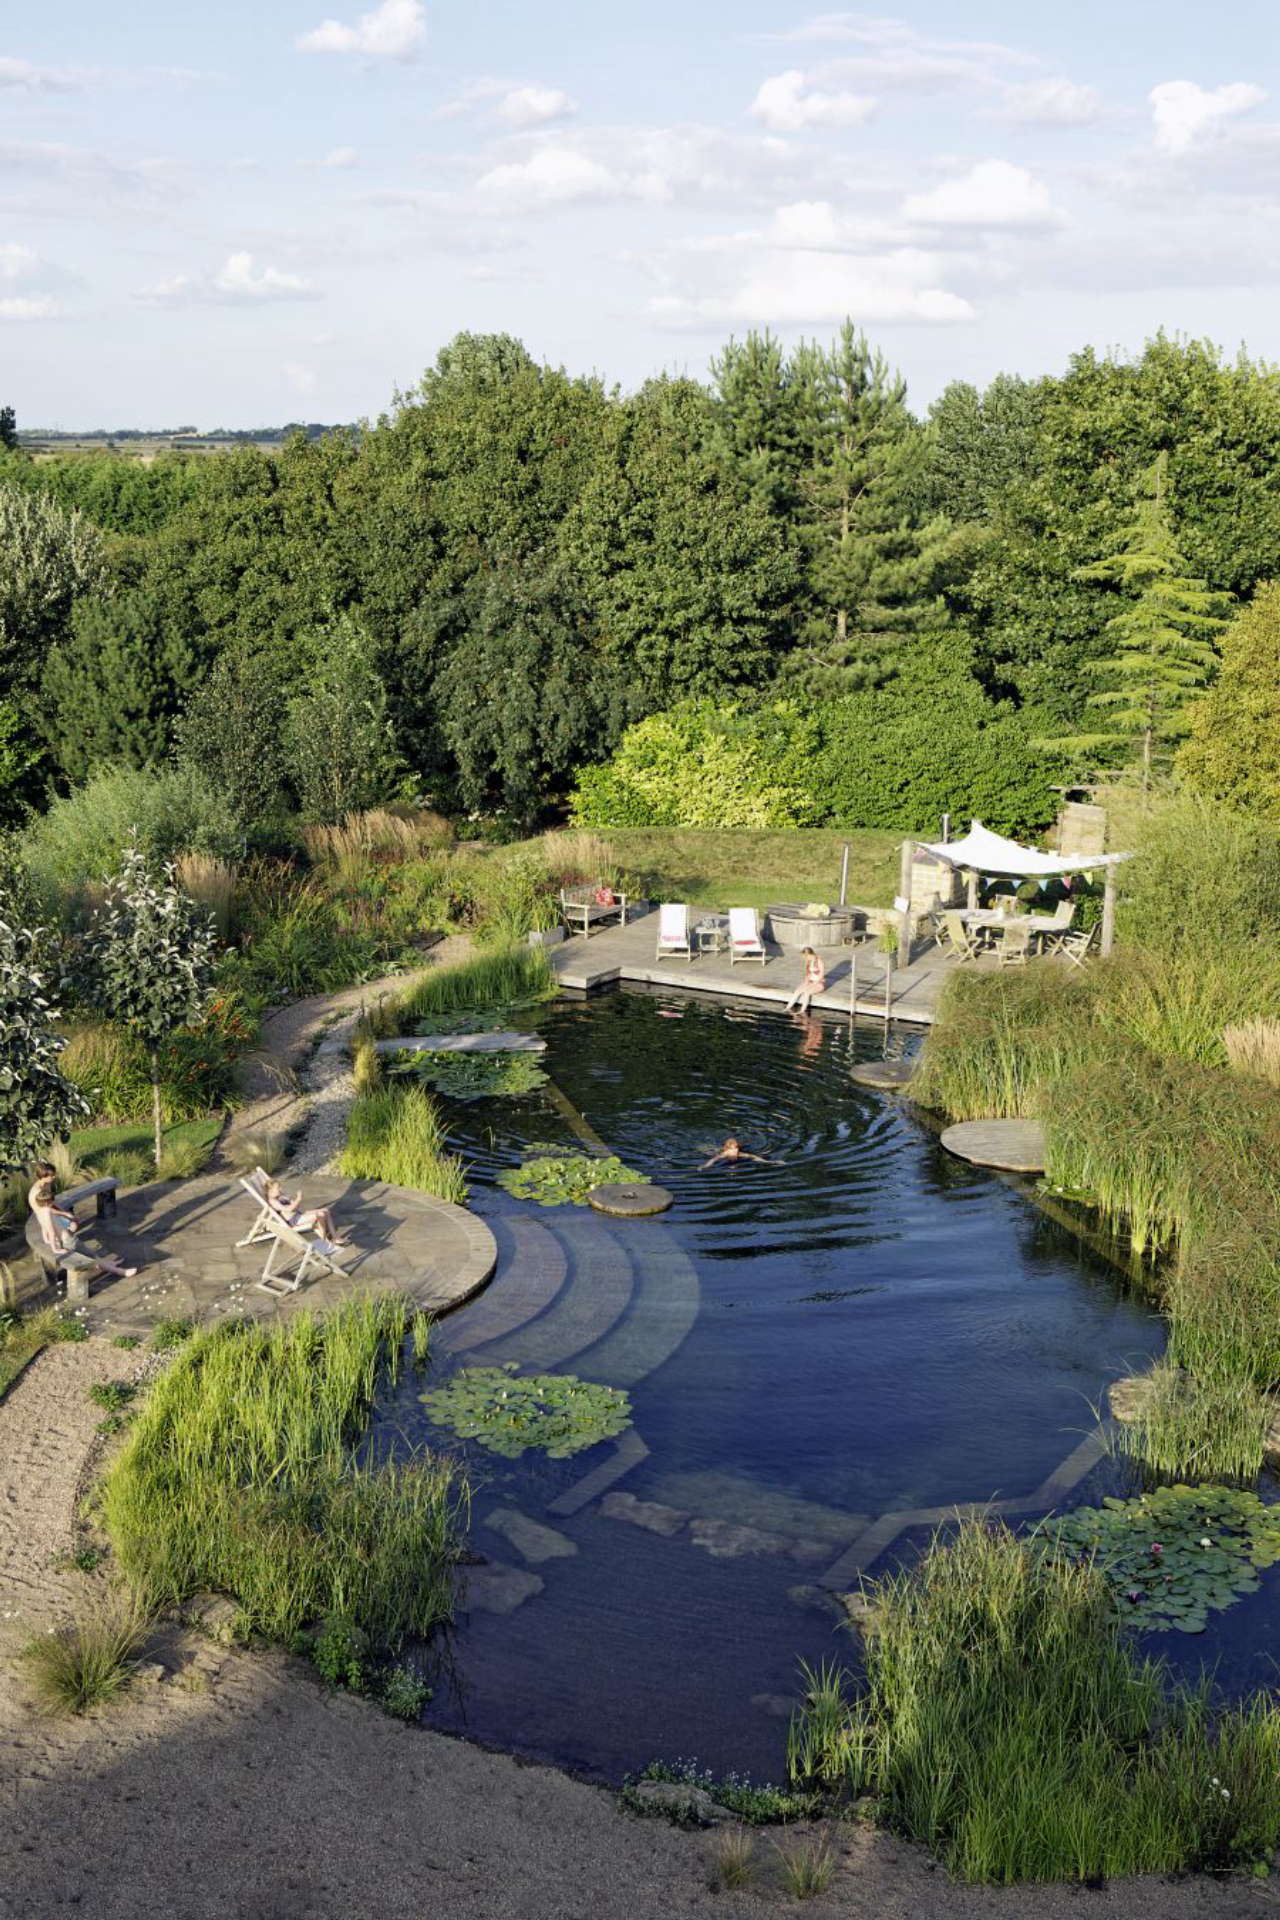 Piscina natural de 300 m² em Doncaster, na Inglaterra: projeto da Biotop conferiu diferentes profundidades para adultos e crianças se divertirem com segurança.